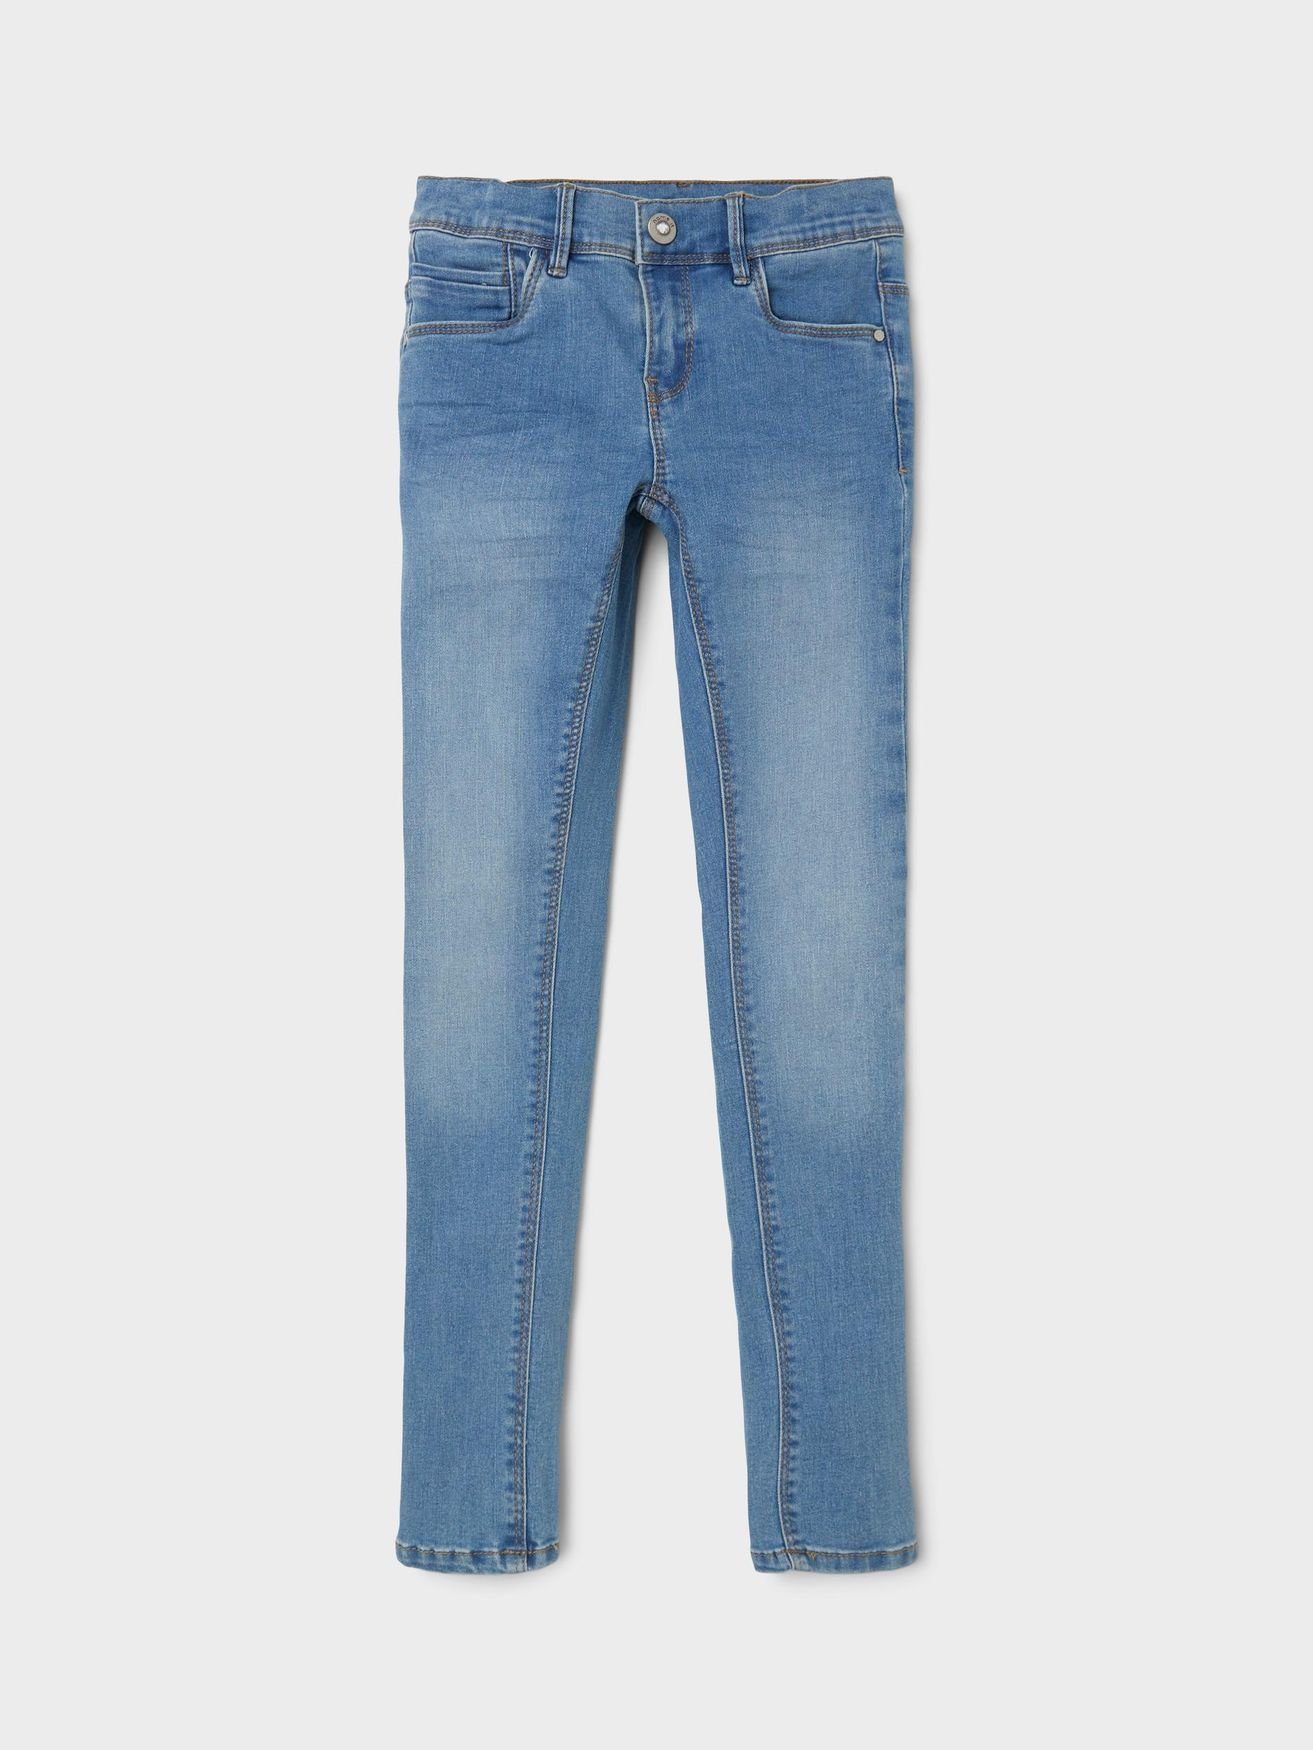 Denim Skinny Hellblau It Regular-fit-Jeans Name in 5546 NKFPOLLY Jeans Hose